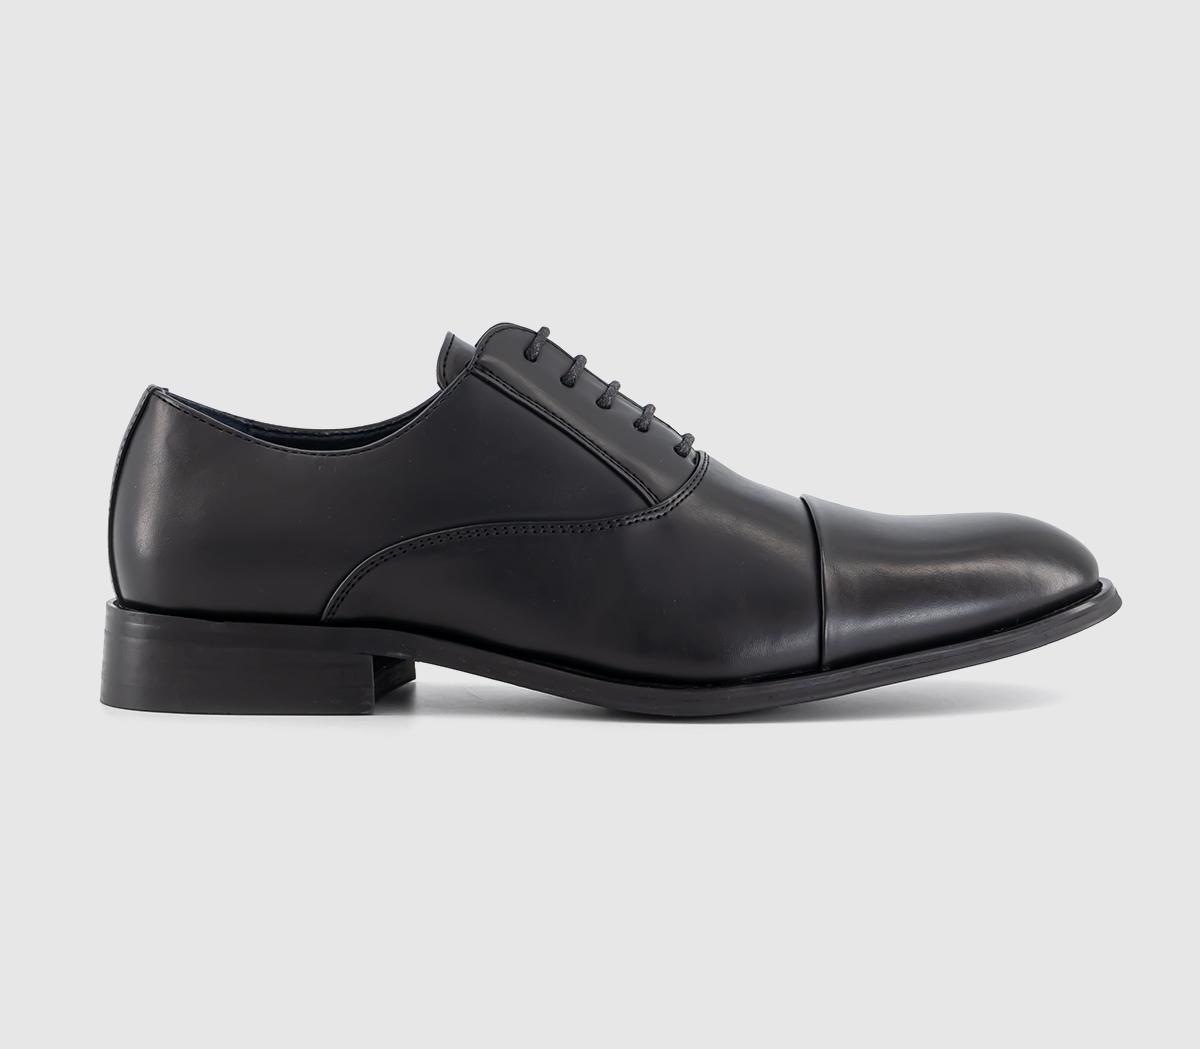 OFFICE Middleton Toecap Oxford Shoes Black - Men’s Smart Shoes